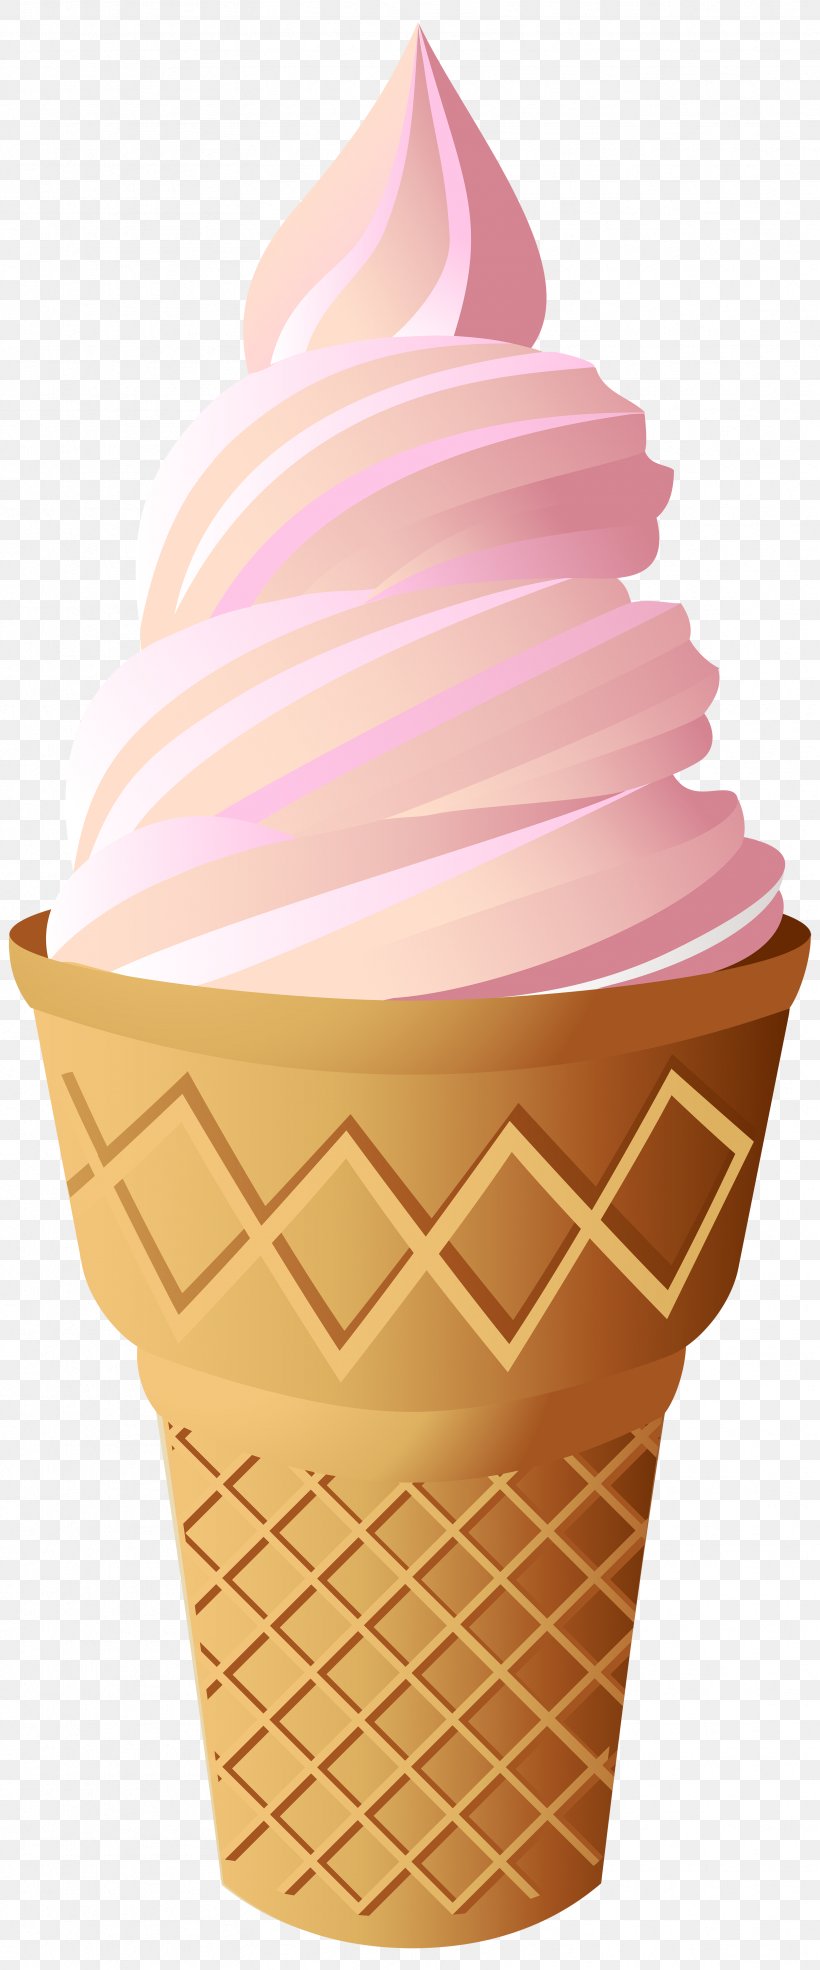 Ice Cream Cones Cupcake Neapolitan Ice Cream, PNG, 3329x8000px, Ice Cream Cones, Baking Cup, Chocolate Ice Cream, Cream, Cup Download Free